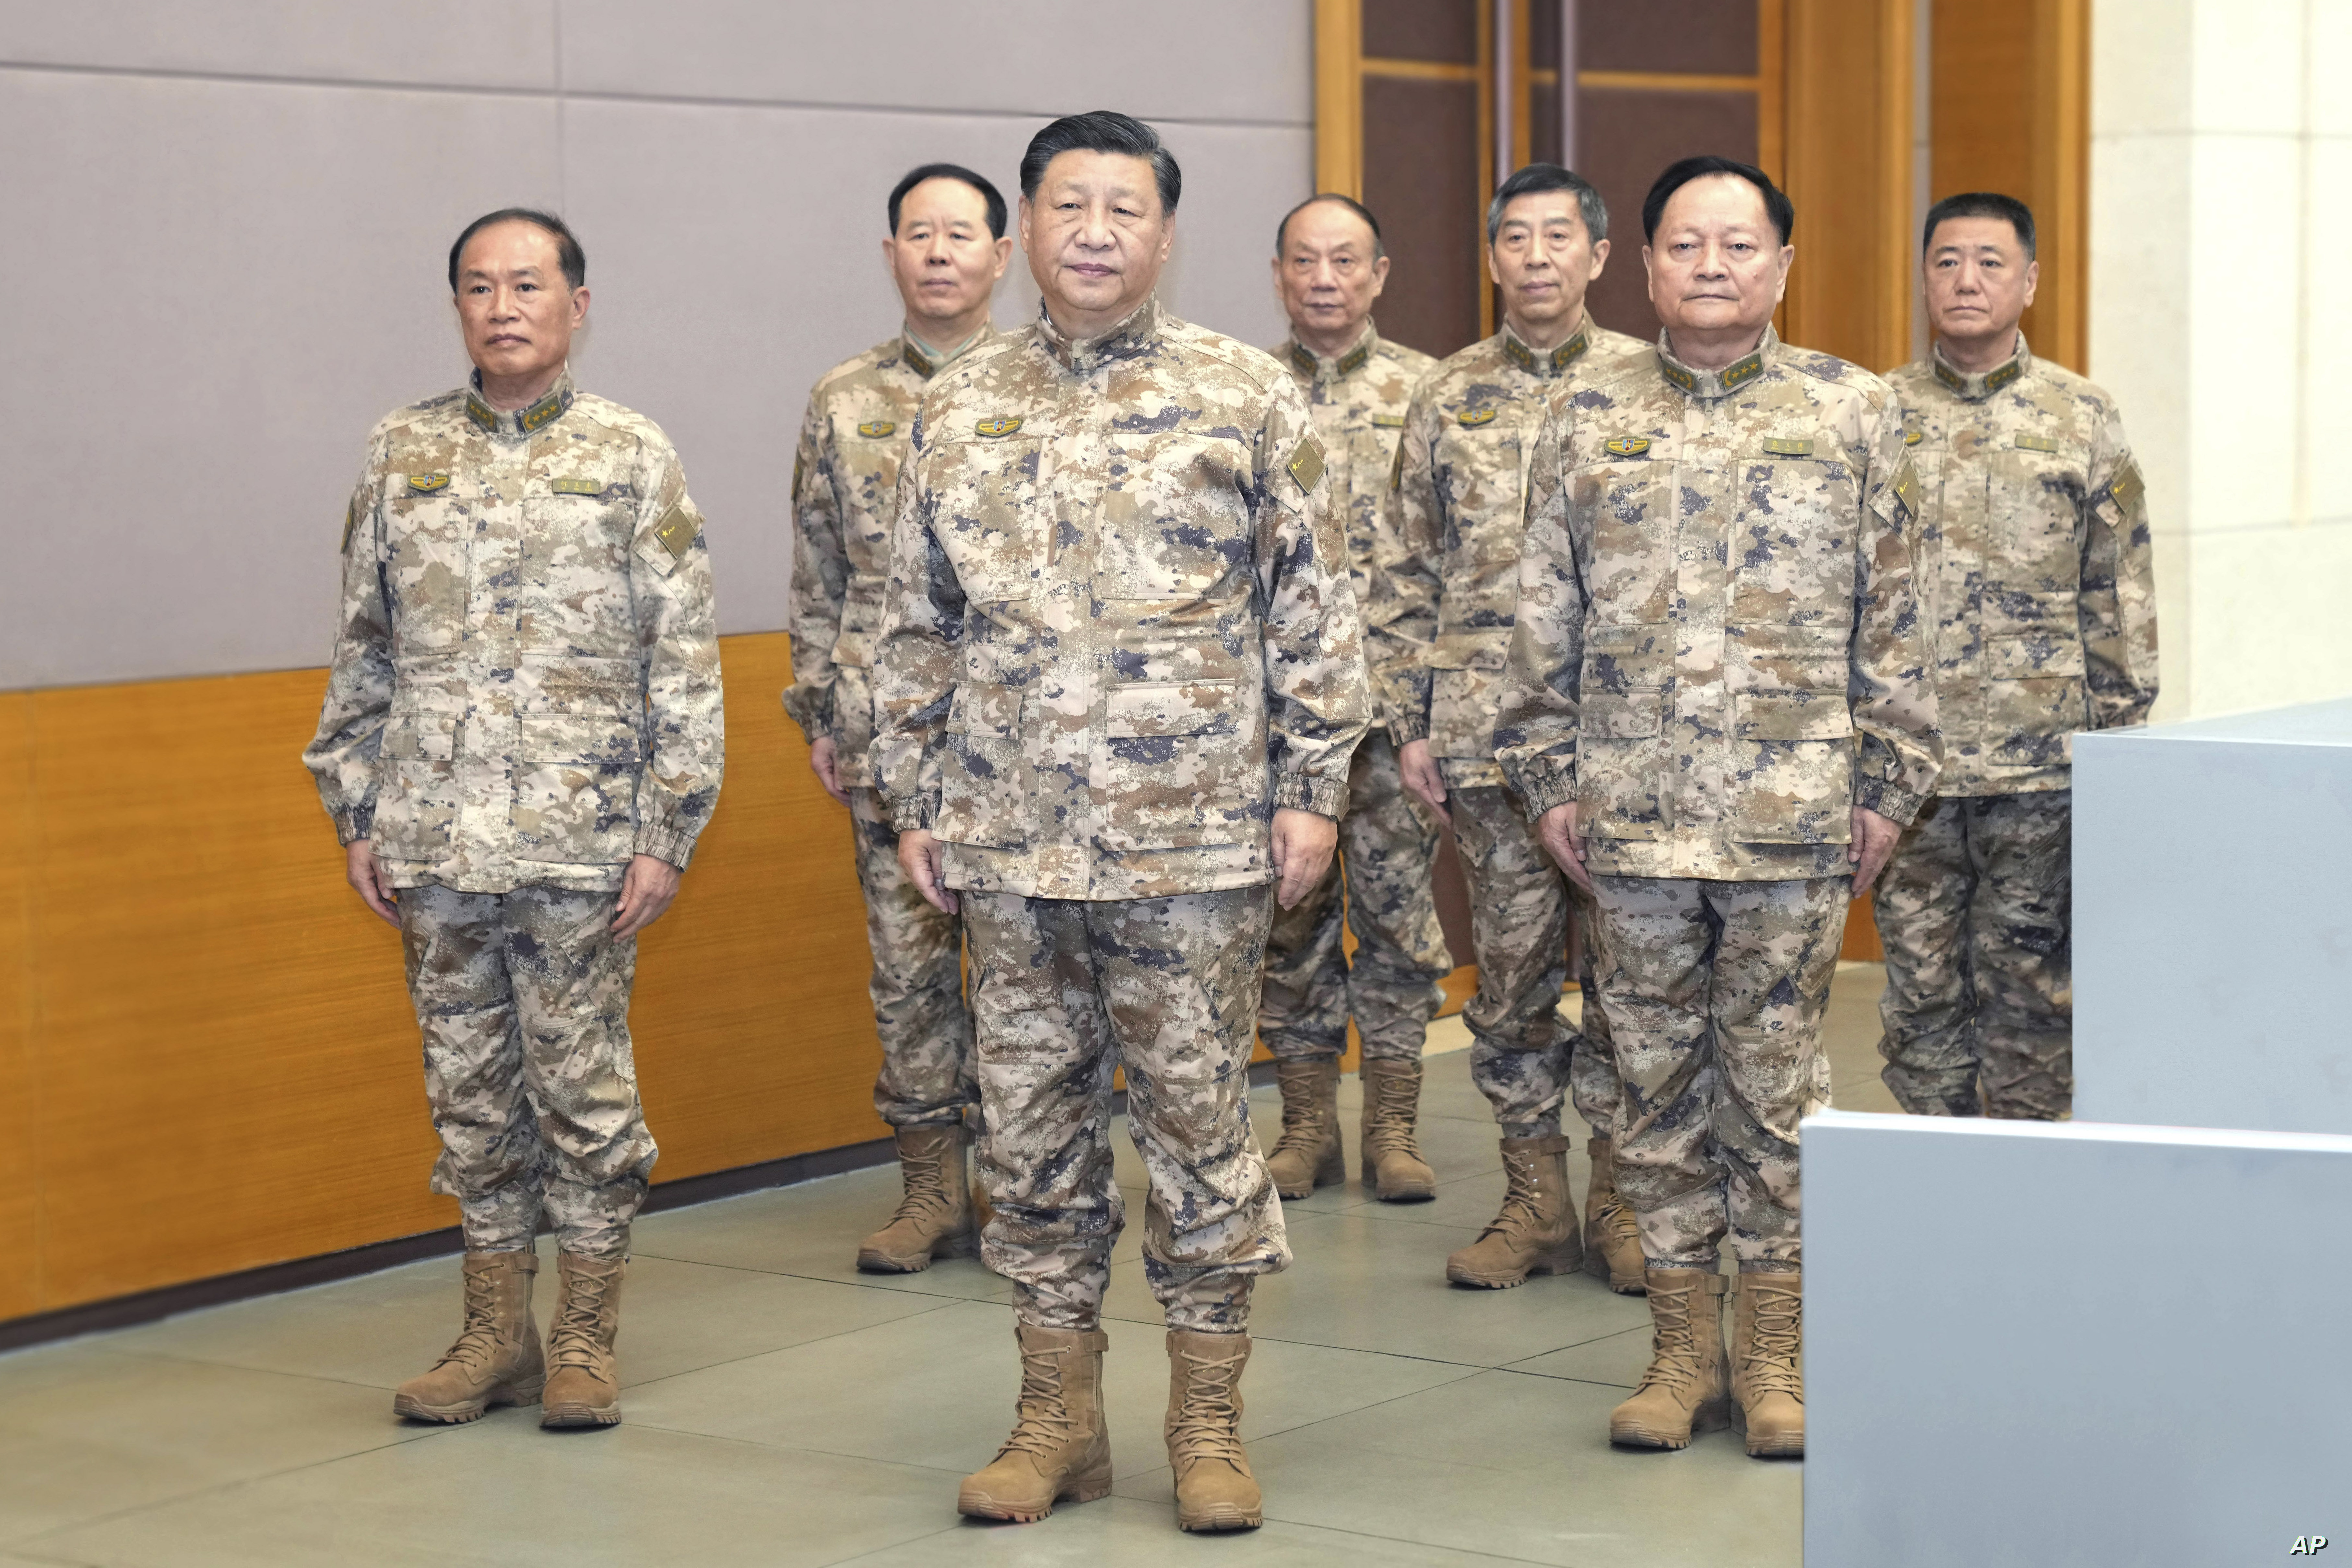 الرئيس الصيني يشدد على فتح آفاق جديدة للاستعداد للحرب